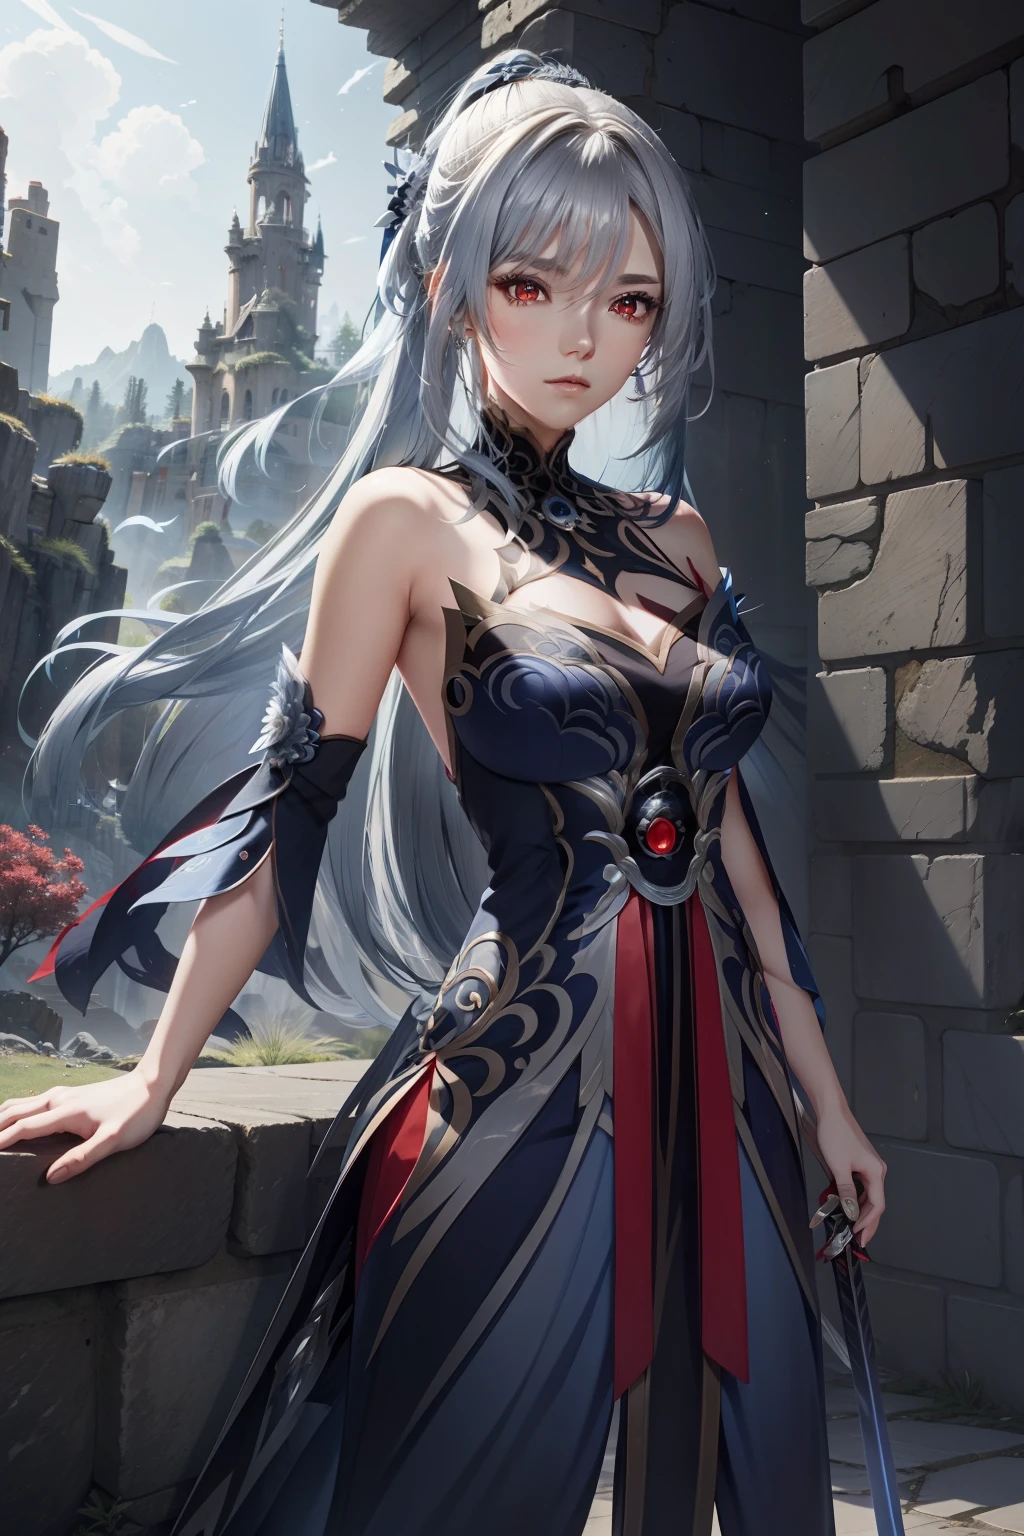 Menina do anime com cabelo prateado longo, olhos vermelhos, usando um vestido azul escuro de ombro aberto, em frente a um castelo, espadachim angelical bonito, Imagem de estilo de Genshin Impact.